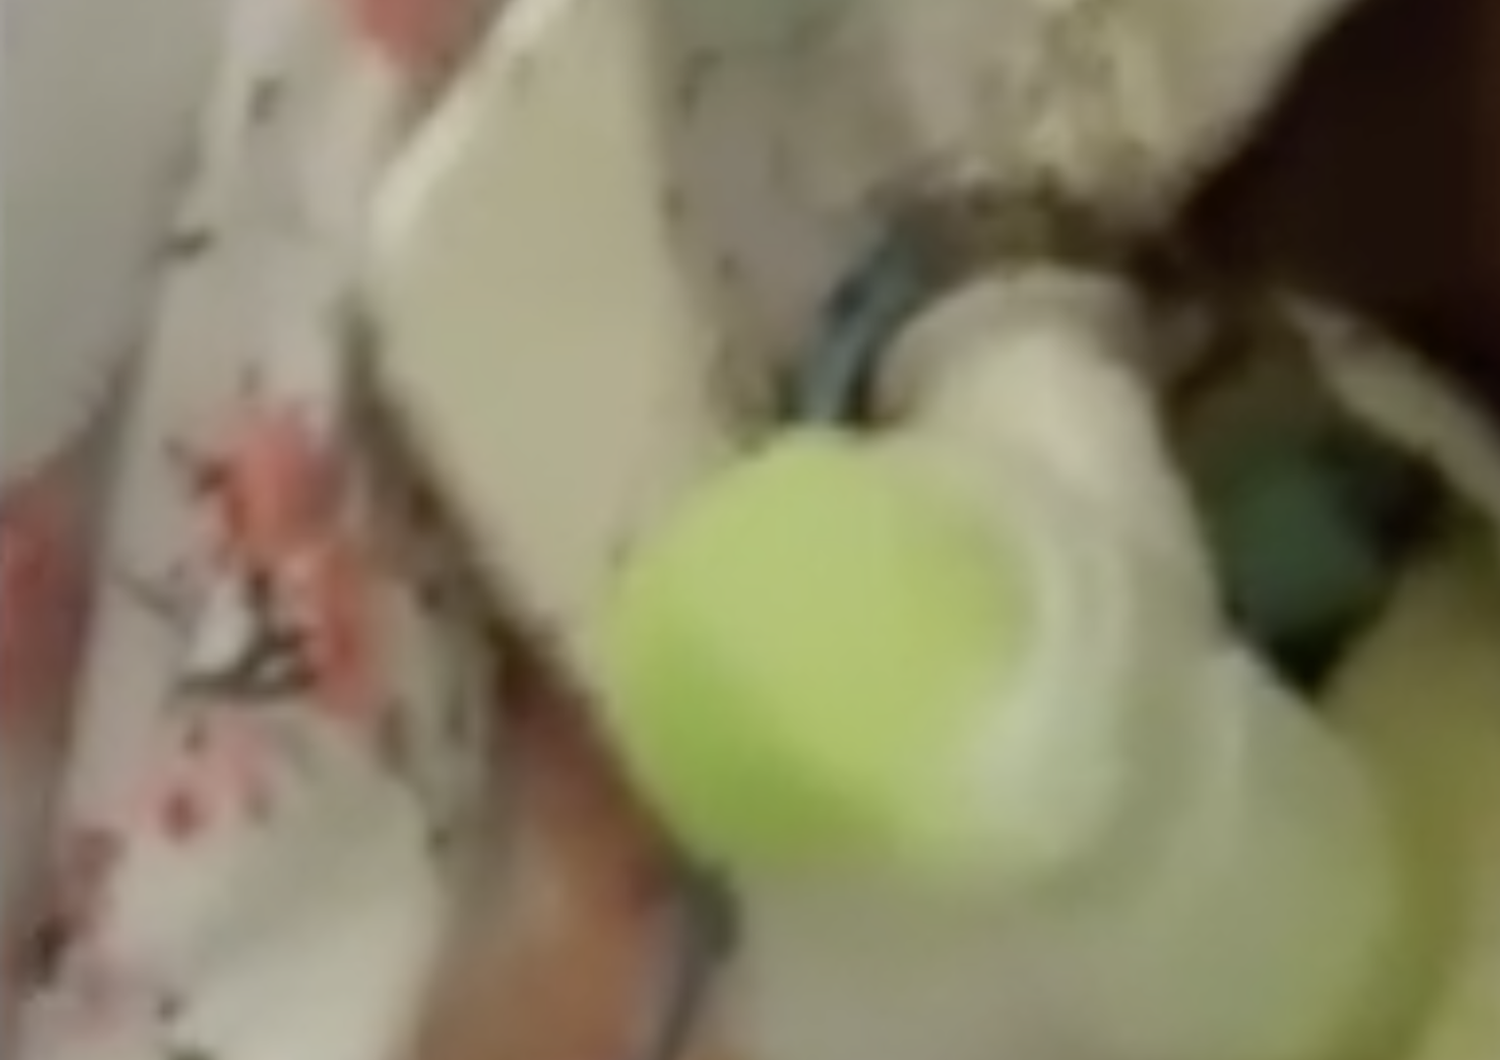 &nbsp;Uno screenshot del video della donna coperta di formiche in un ospedale di Napoli